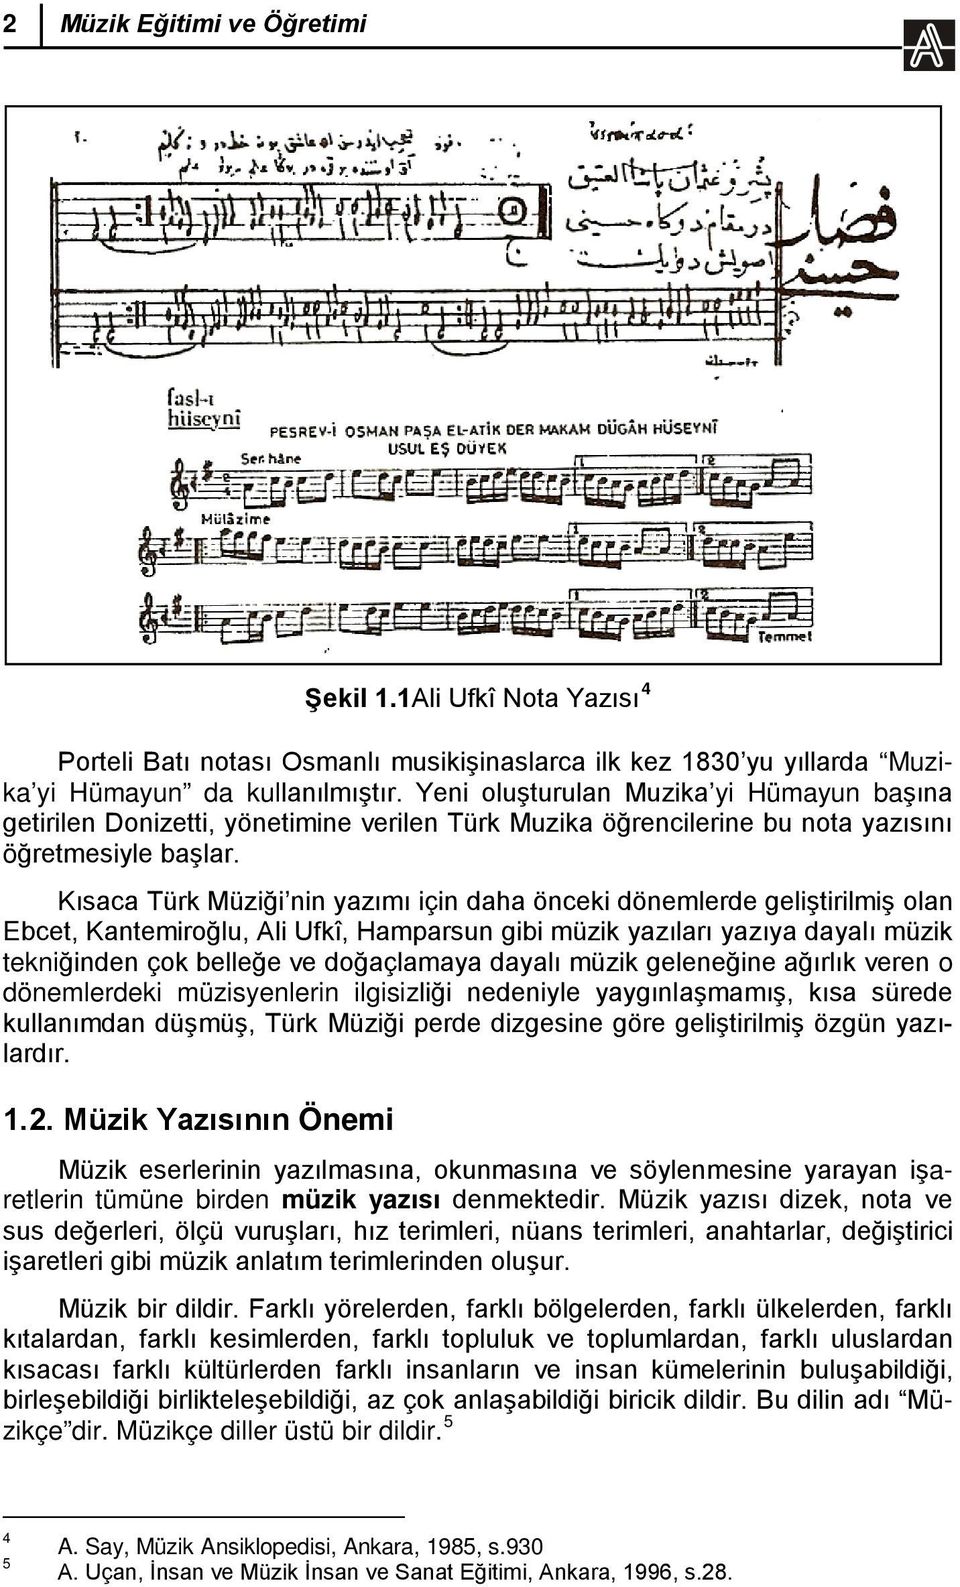 Kısaca Türk Müziği nin yazımı için daha önceki dönemlerde geliştirilmiş olan Ebcet, Kantemiroğlu, Ali Ufkî, Hamparsun gibi müzik yazıları yazıya dayalı müzik tekniğinden çok belleğe ve doğaçlamaya